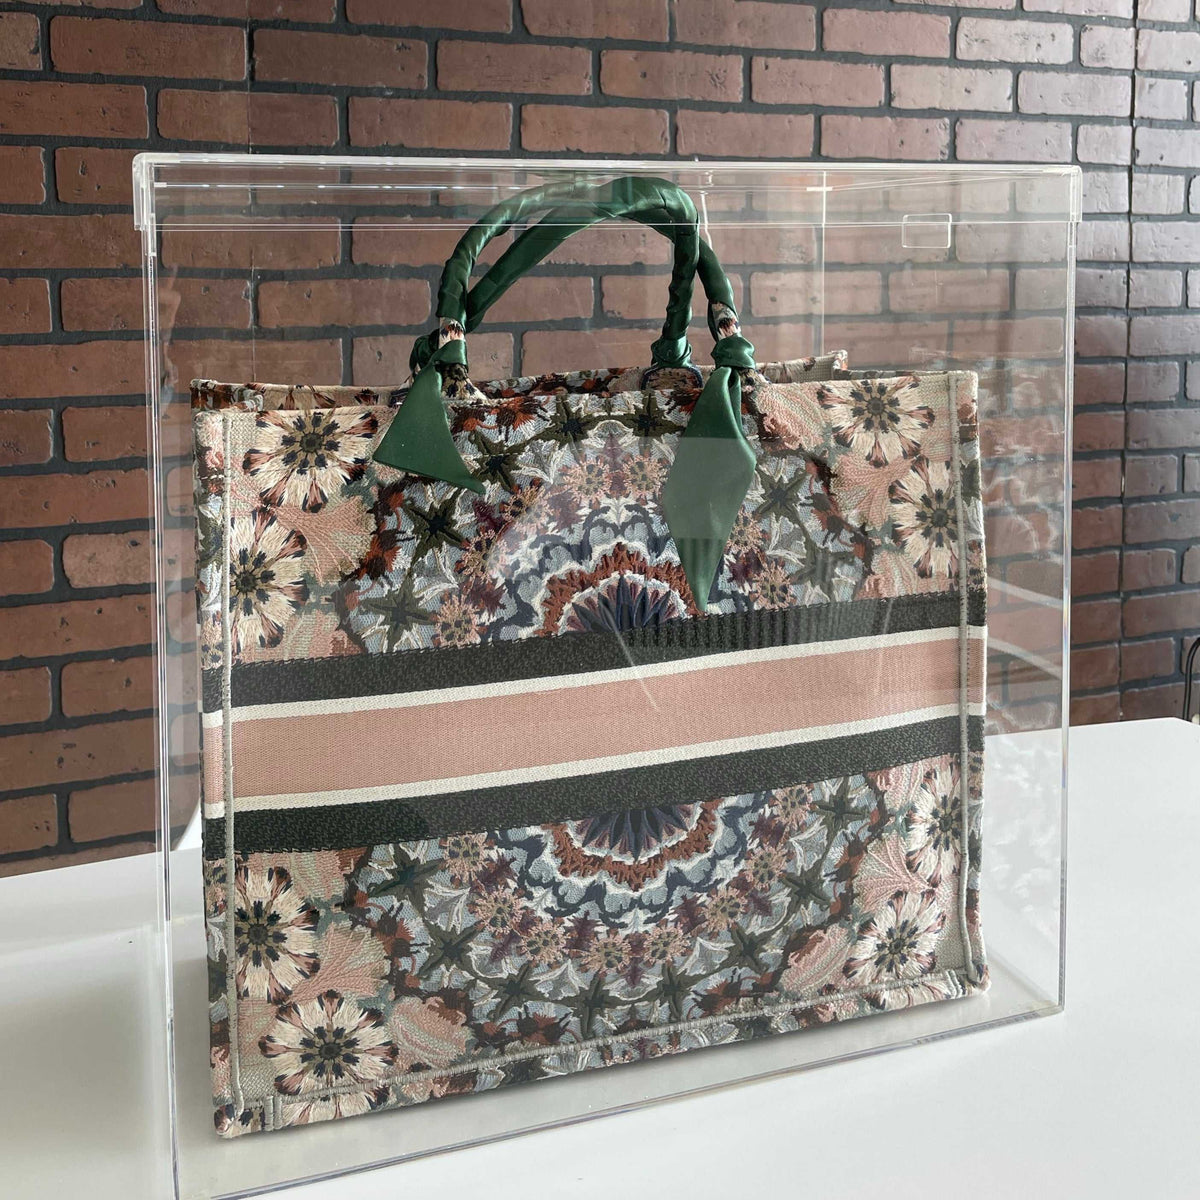 B 4.0 Display Case – Luxury Bag Display